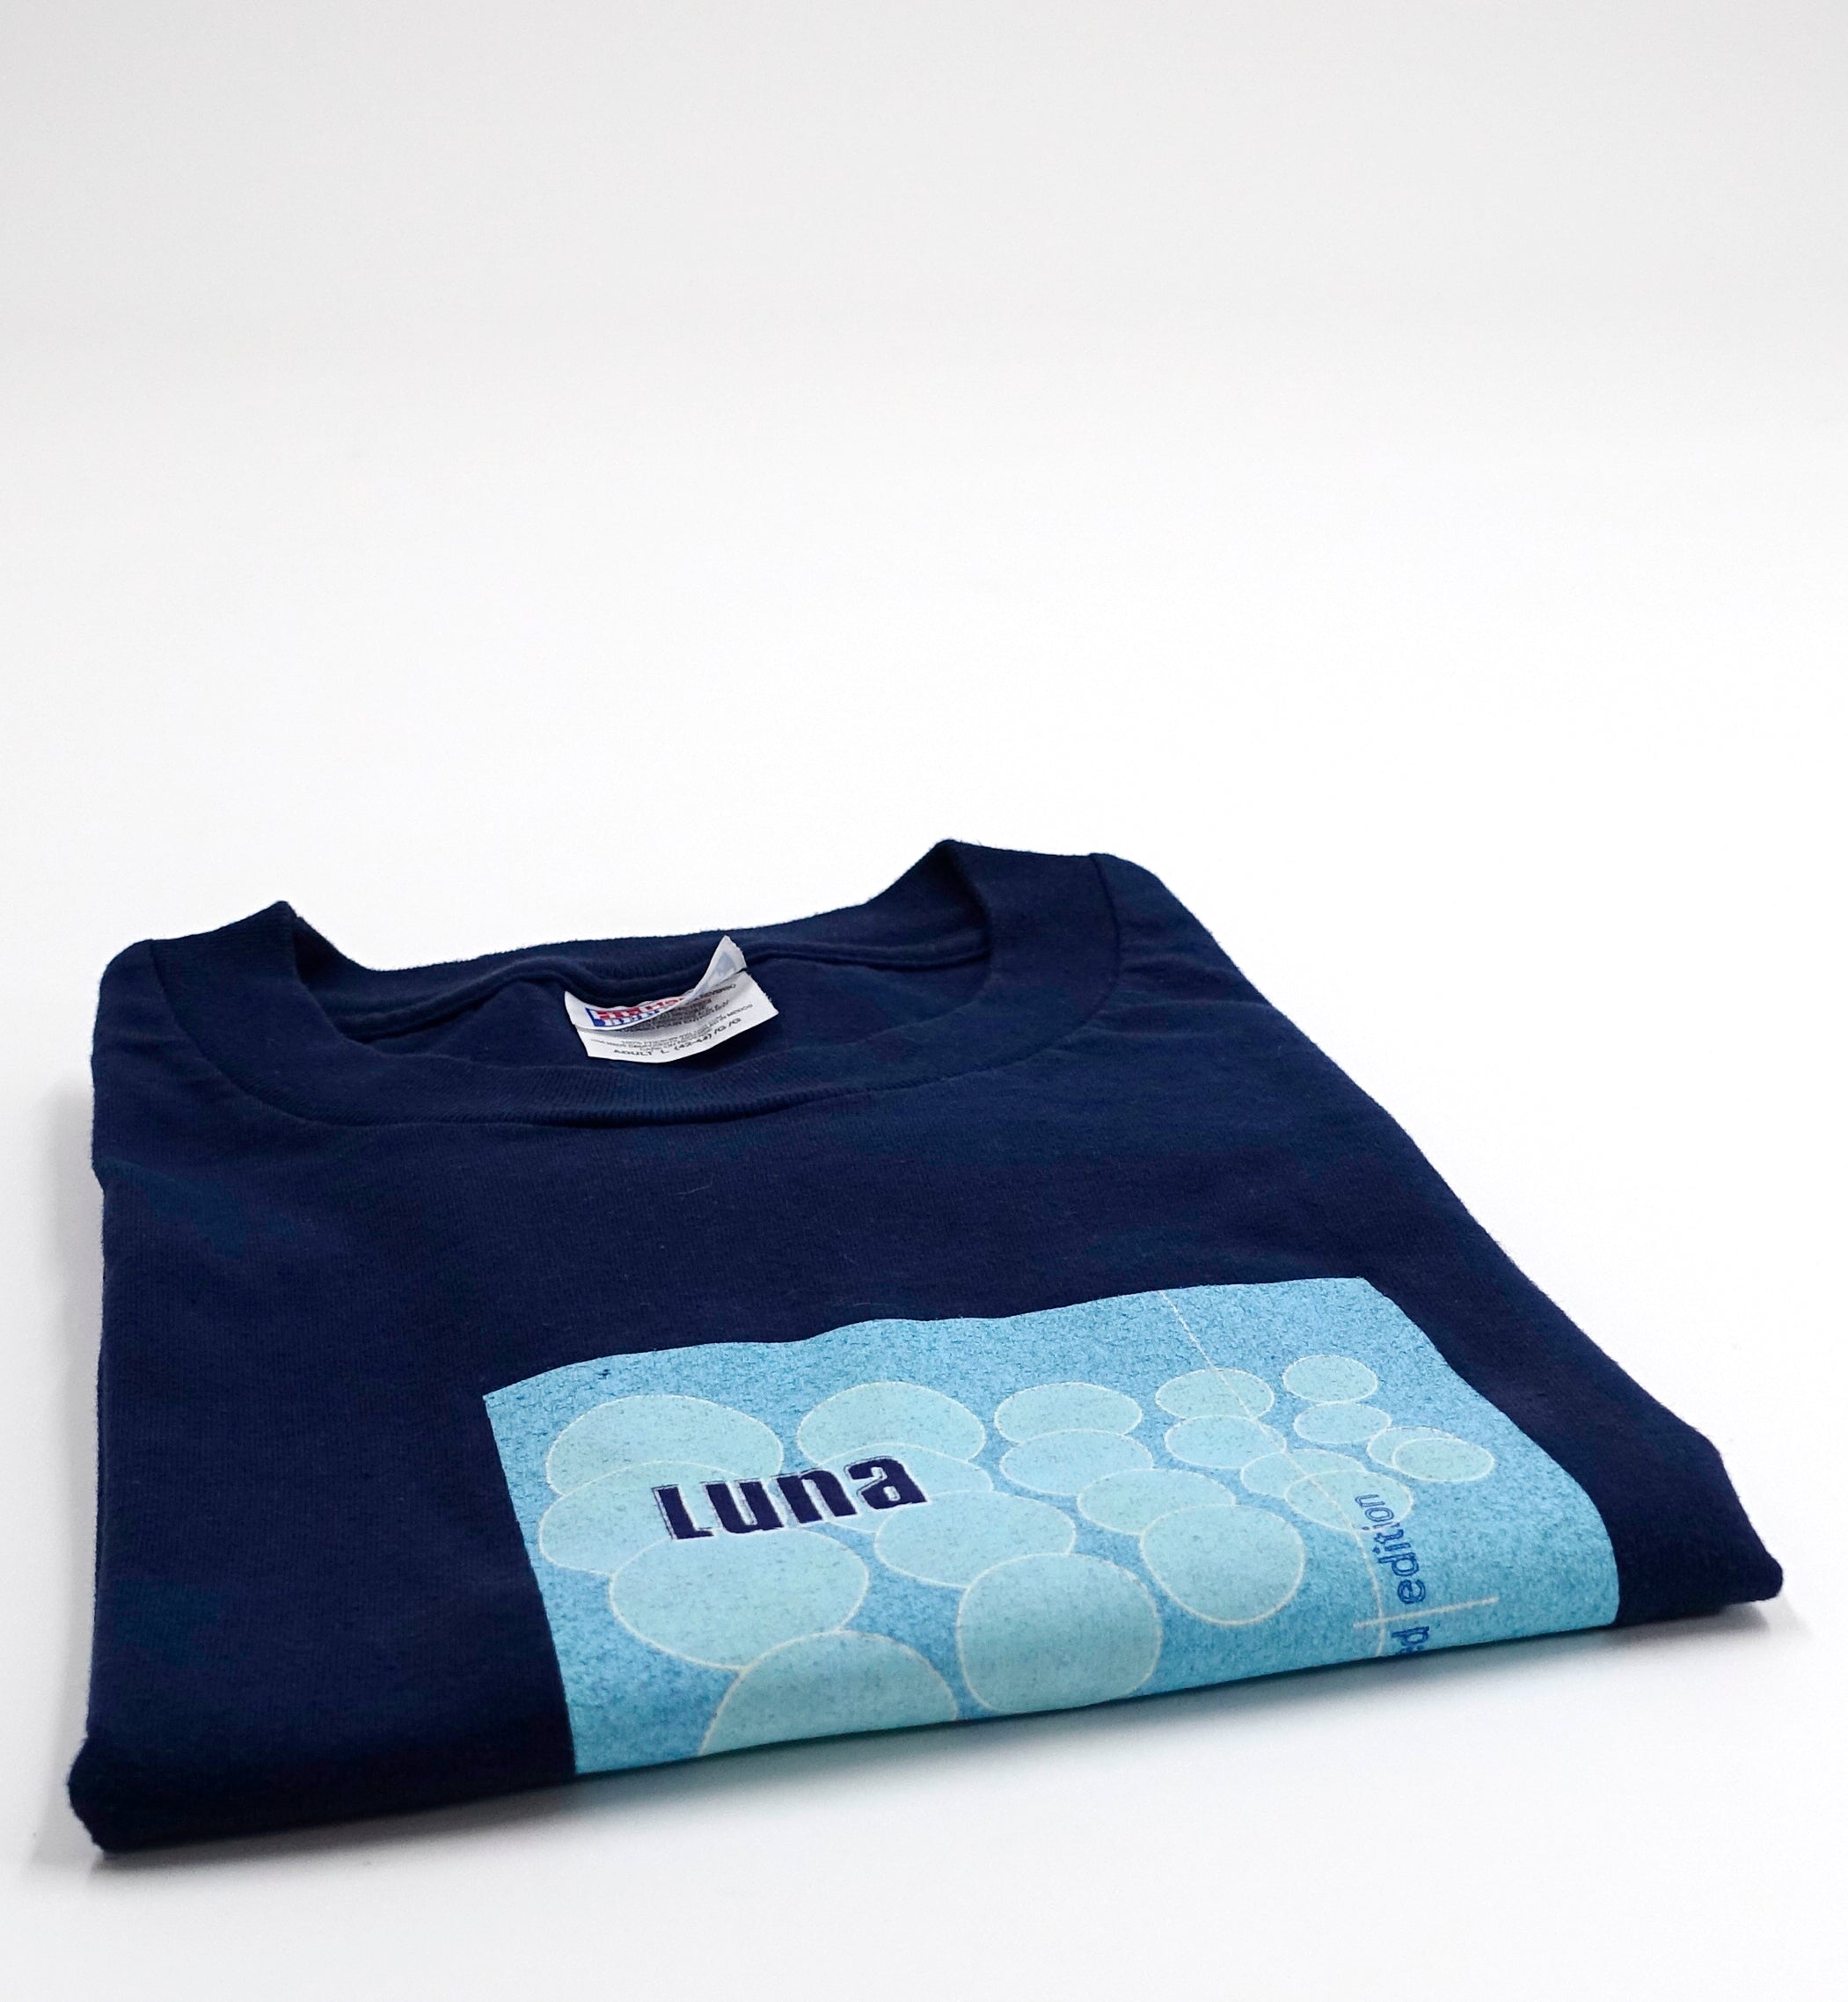 Luna – Limited Edition 1999 Promo Tour Shirt Size Large